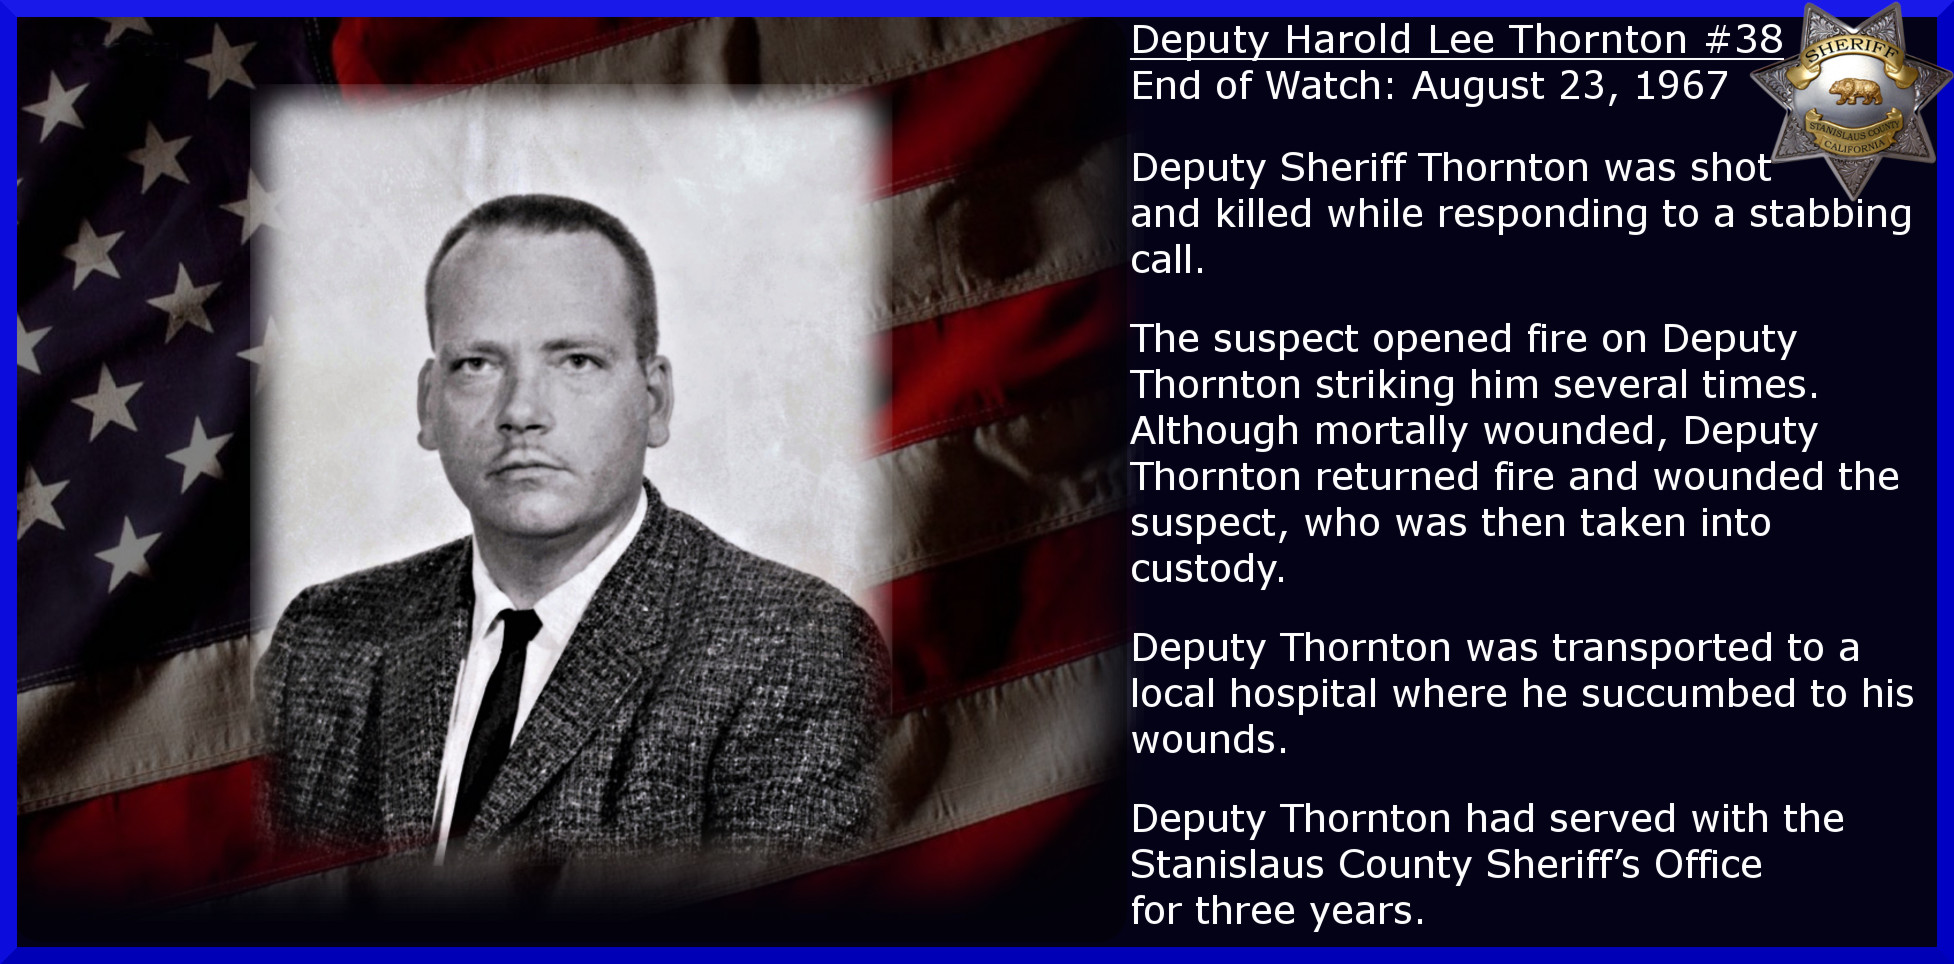 Deputy Thornton